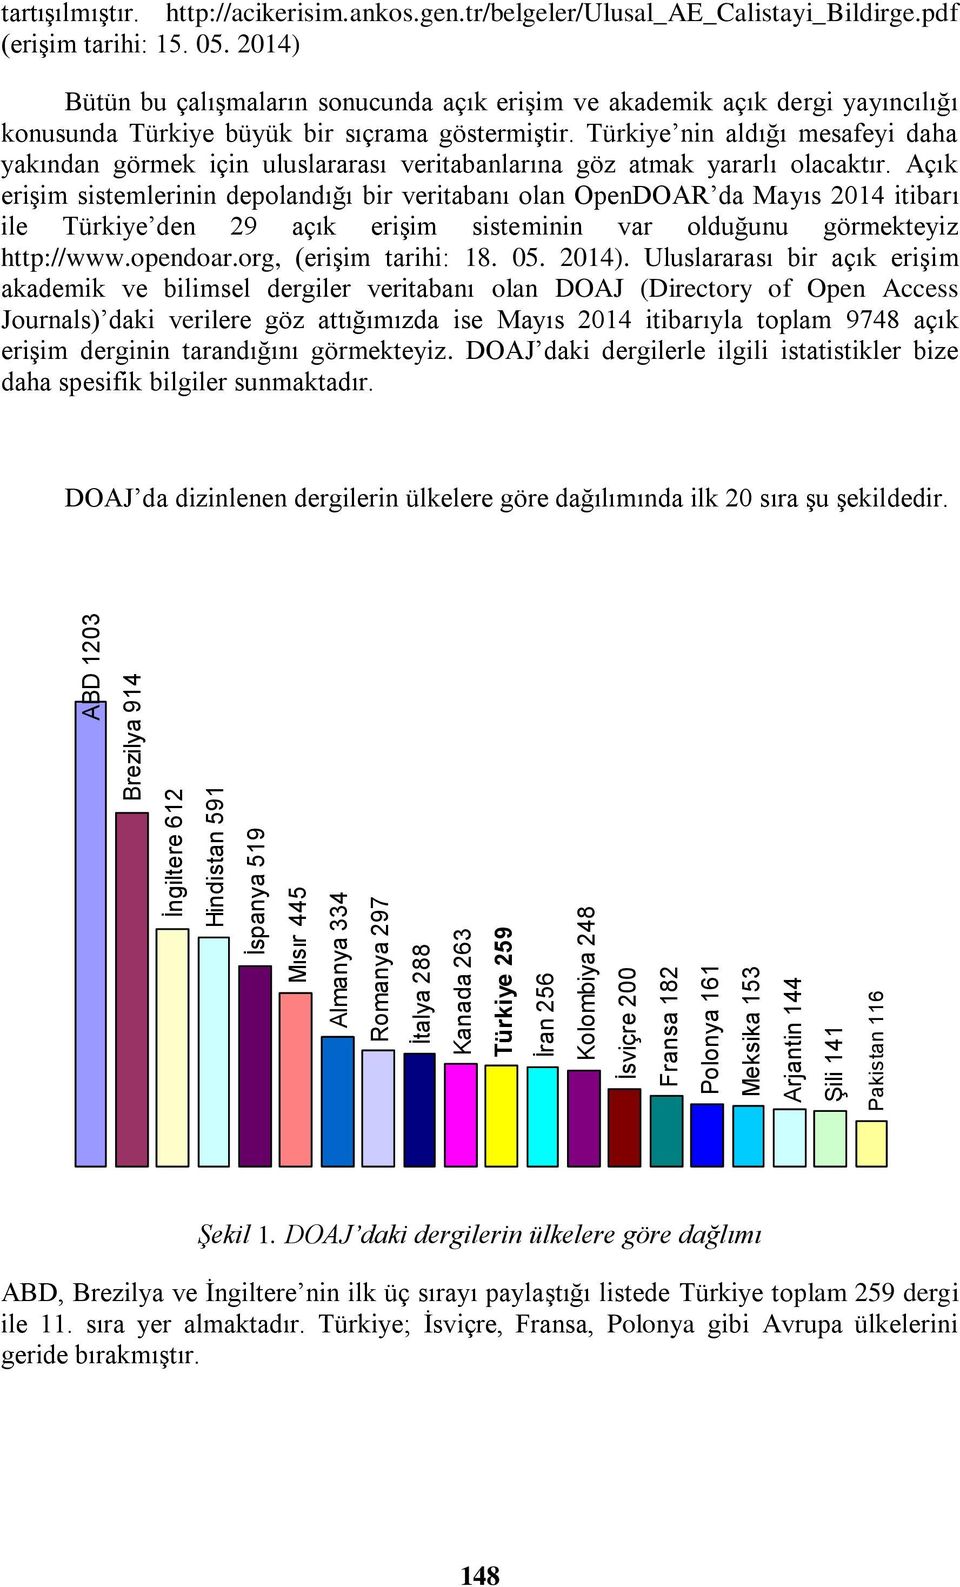 2014) Bütün bu çalışmaların sonucunda açık erişim ve akademik açık dergi yayıncılığı konusunda Türkiye büyük bir sıçrama göstermiştir.